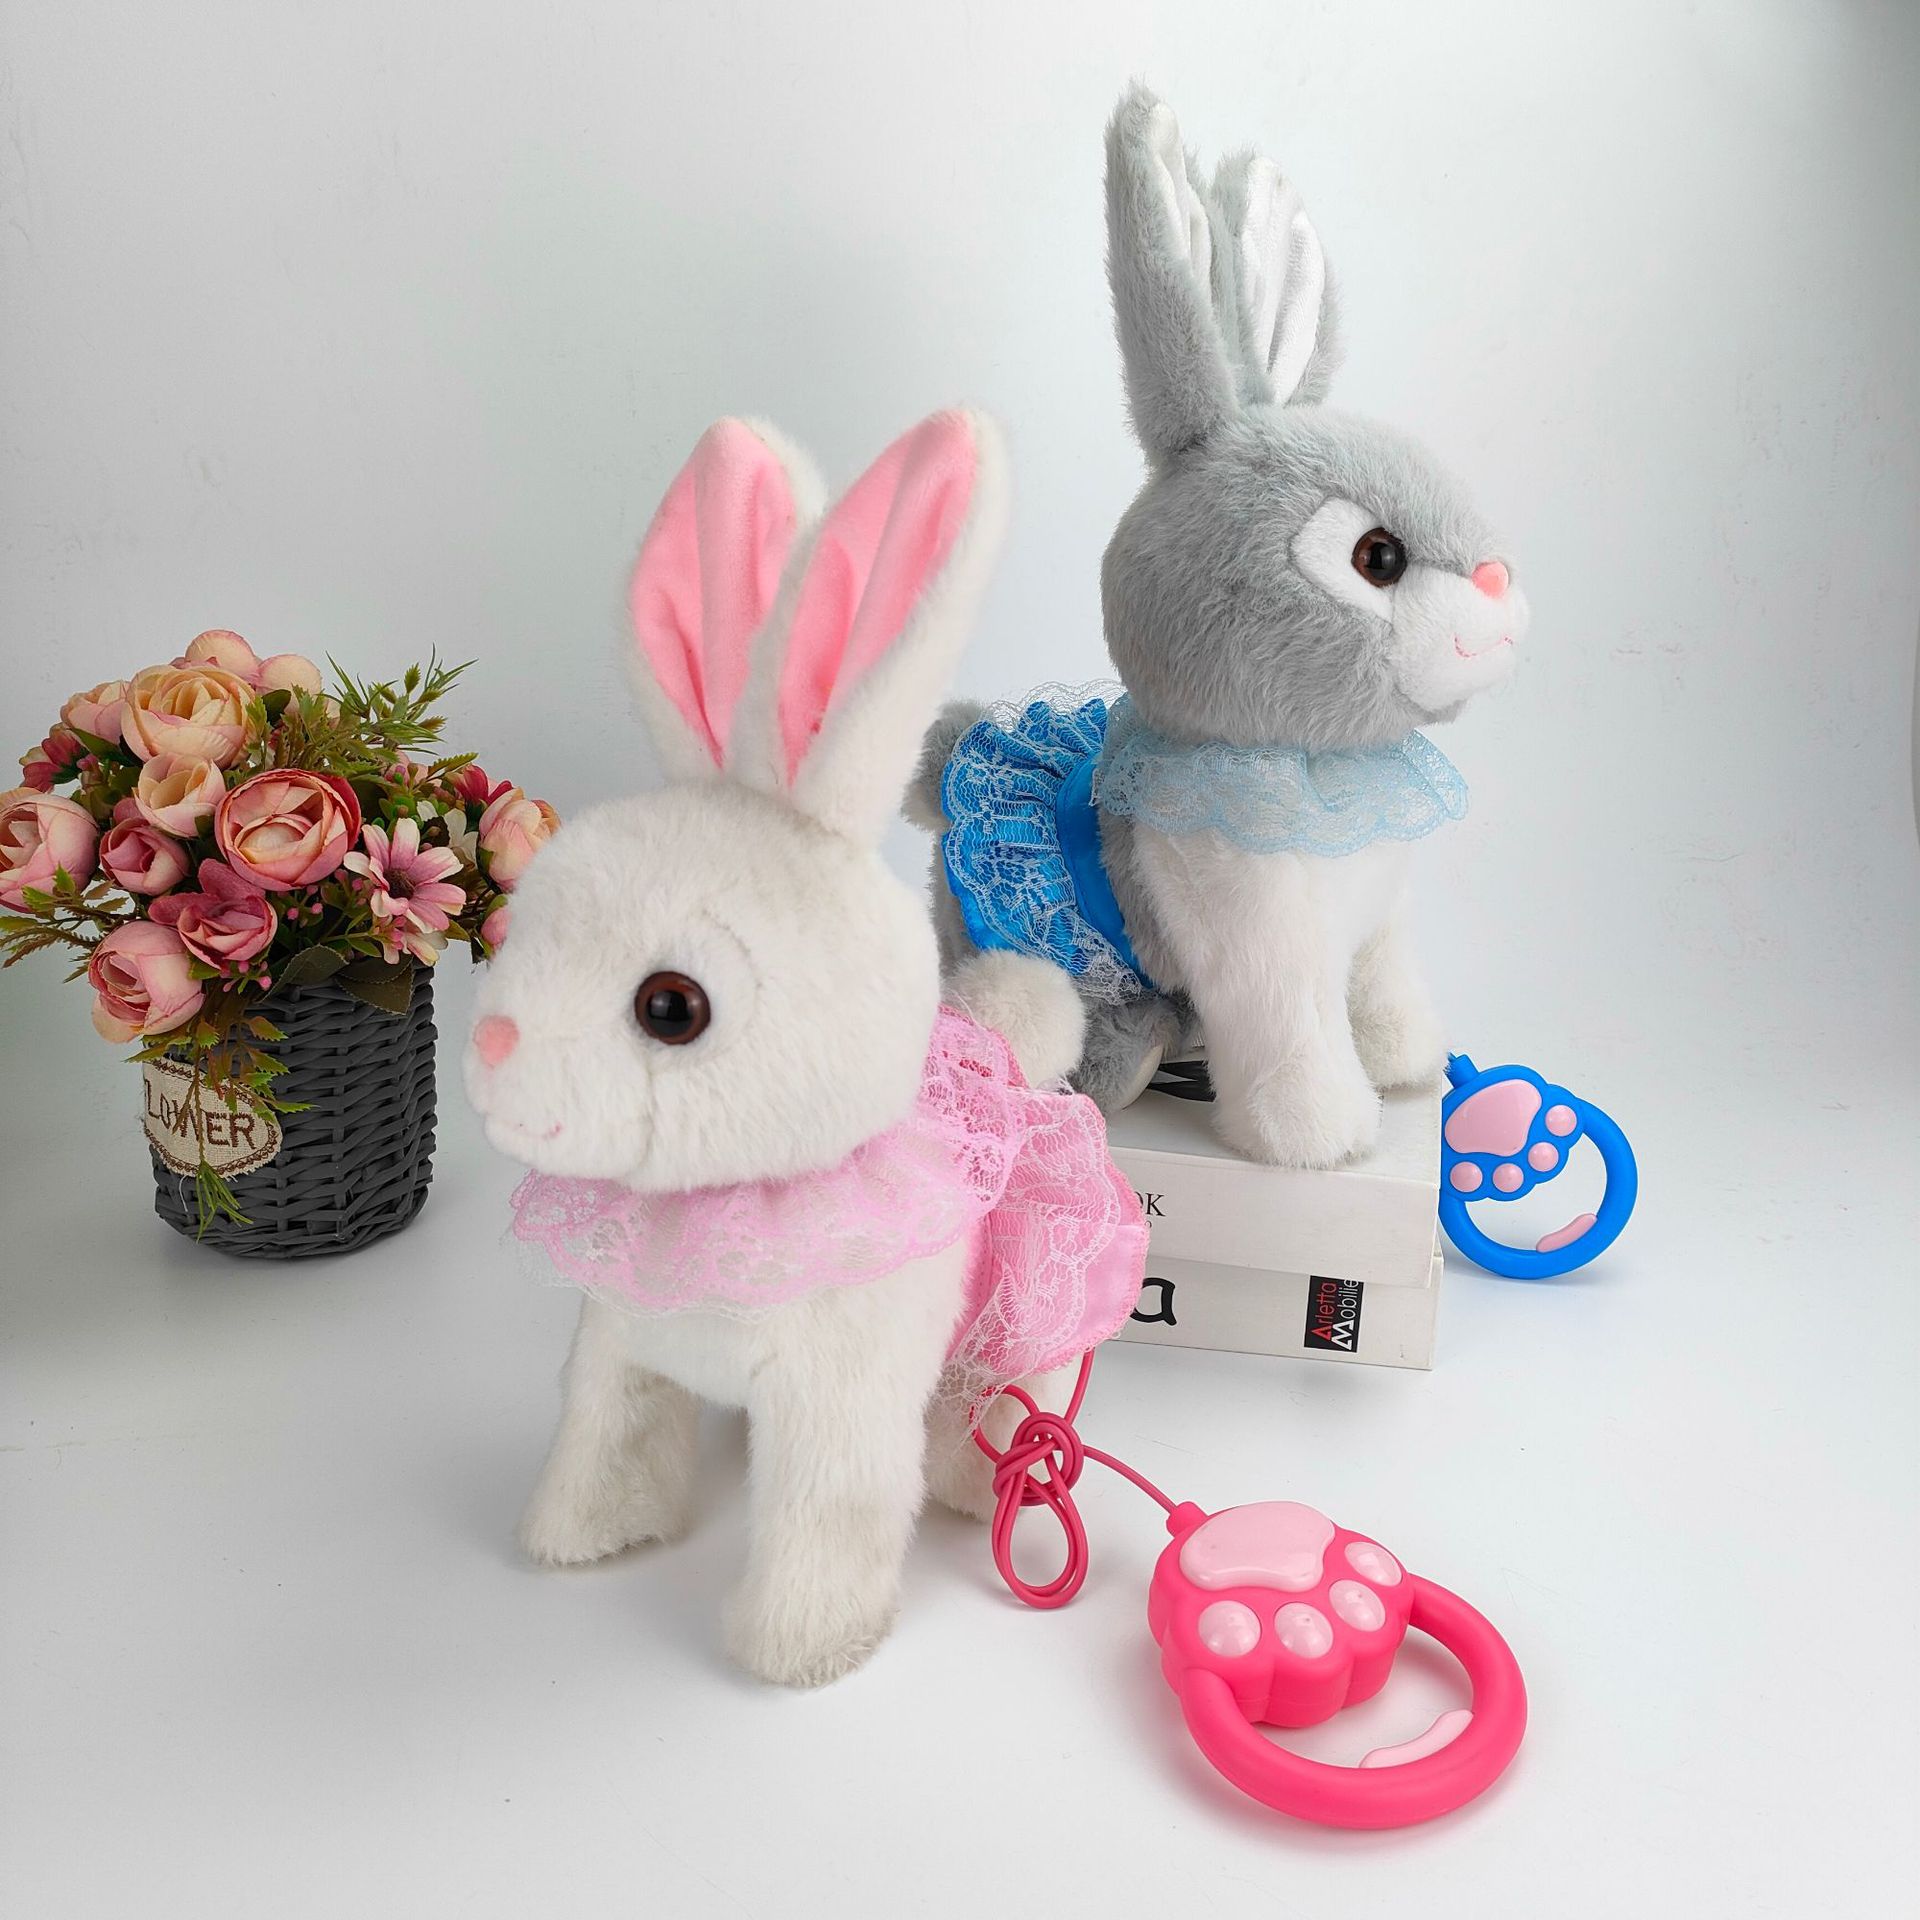 厂家直销批发毛绒玩具兔子唱歌走路牵绳儿童玩具宝宝礼物公仔兔兔